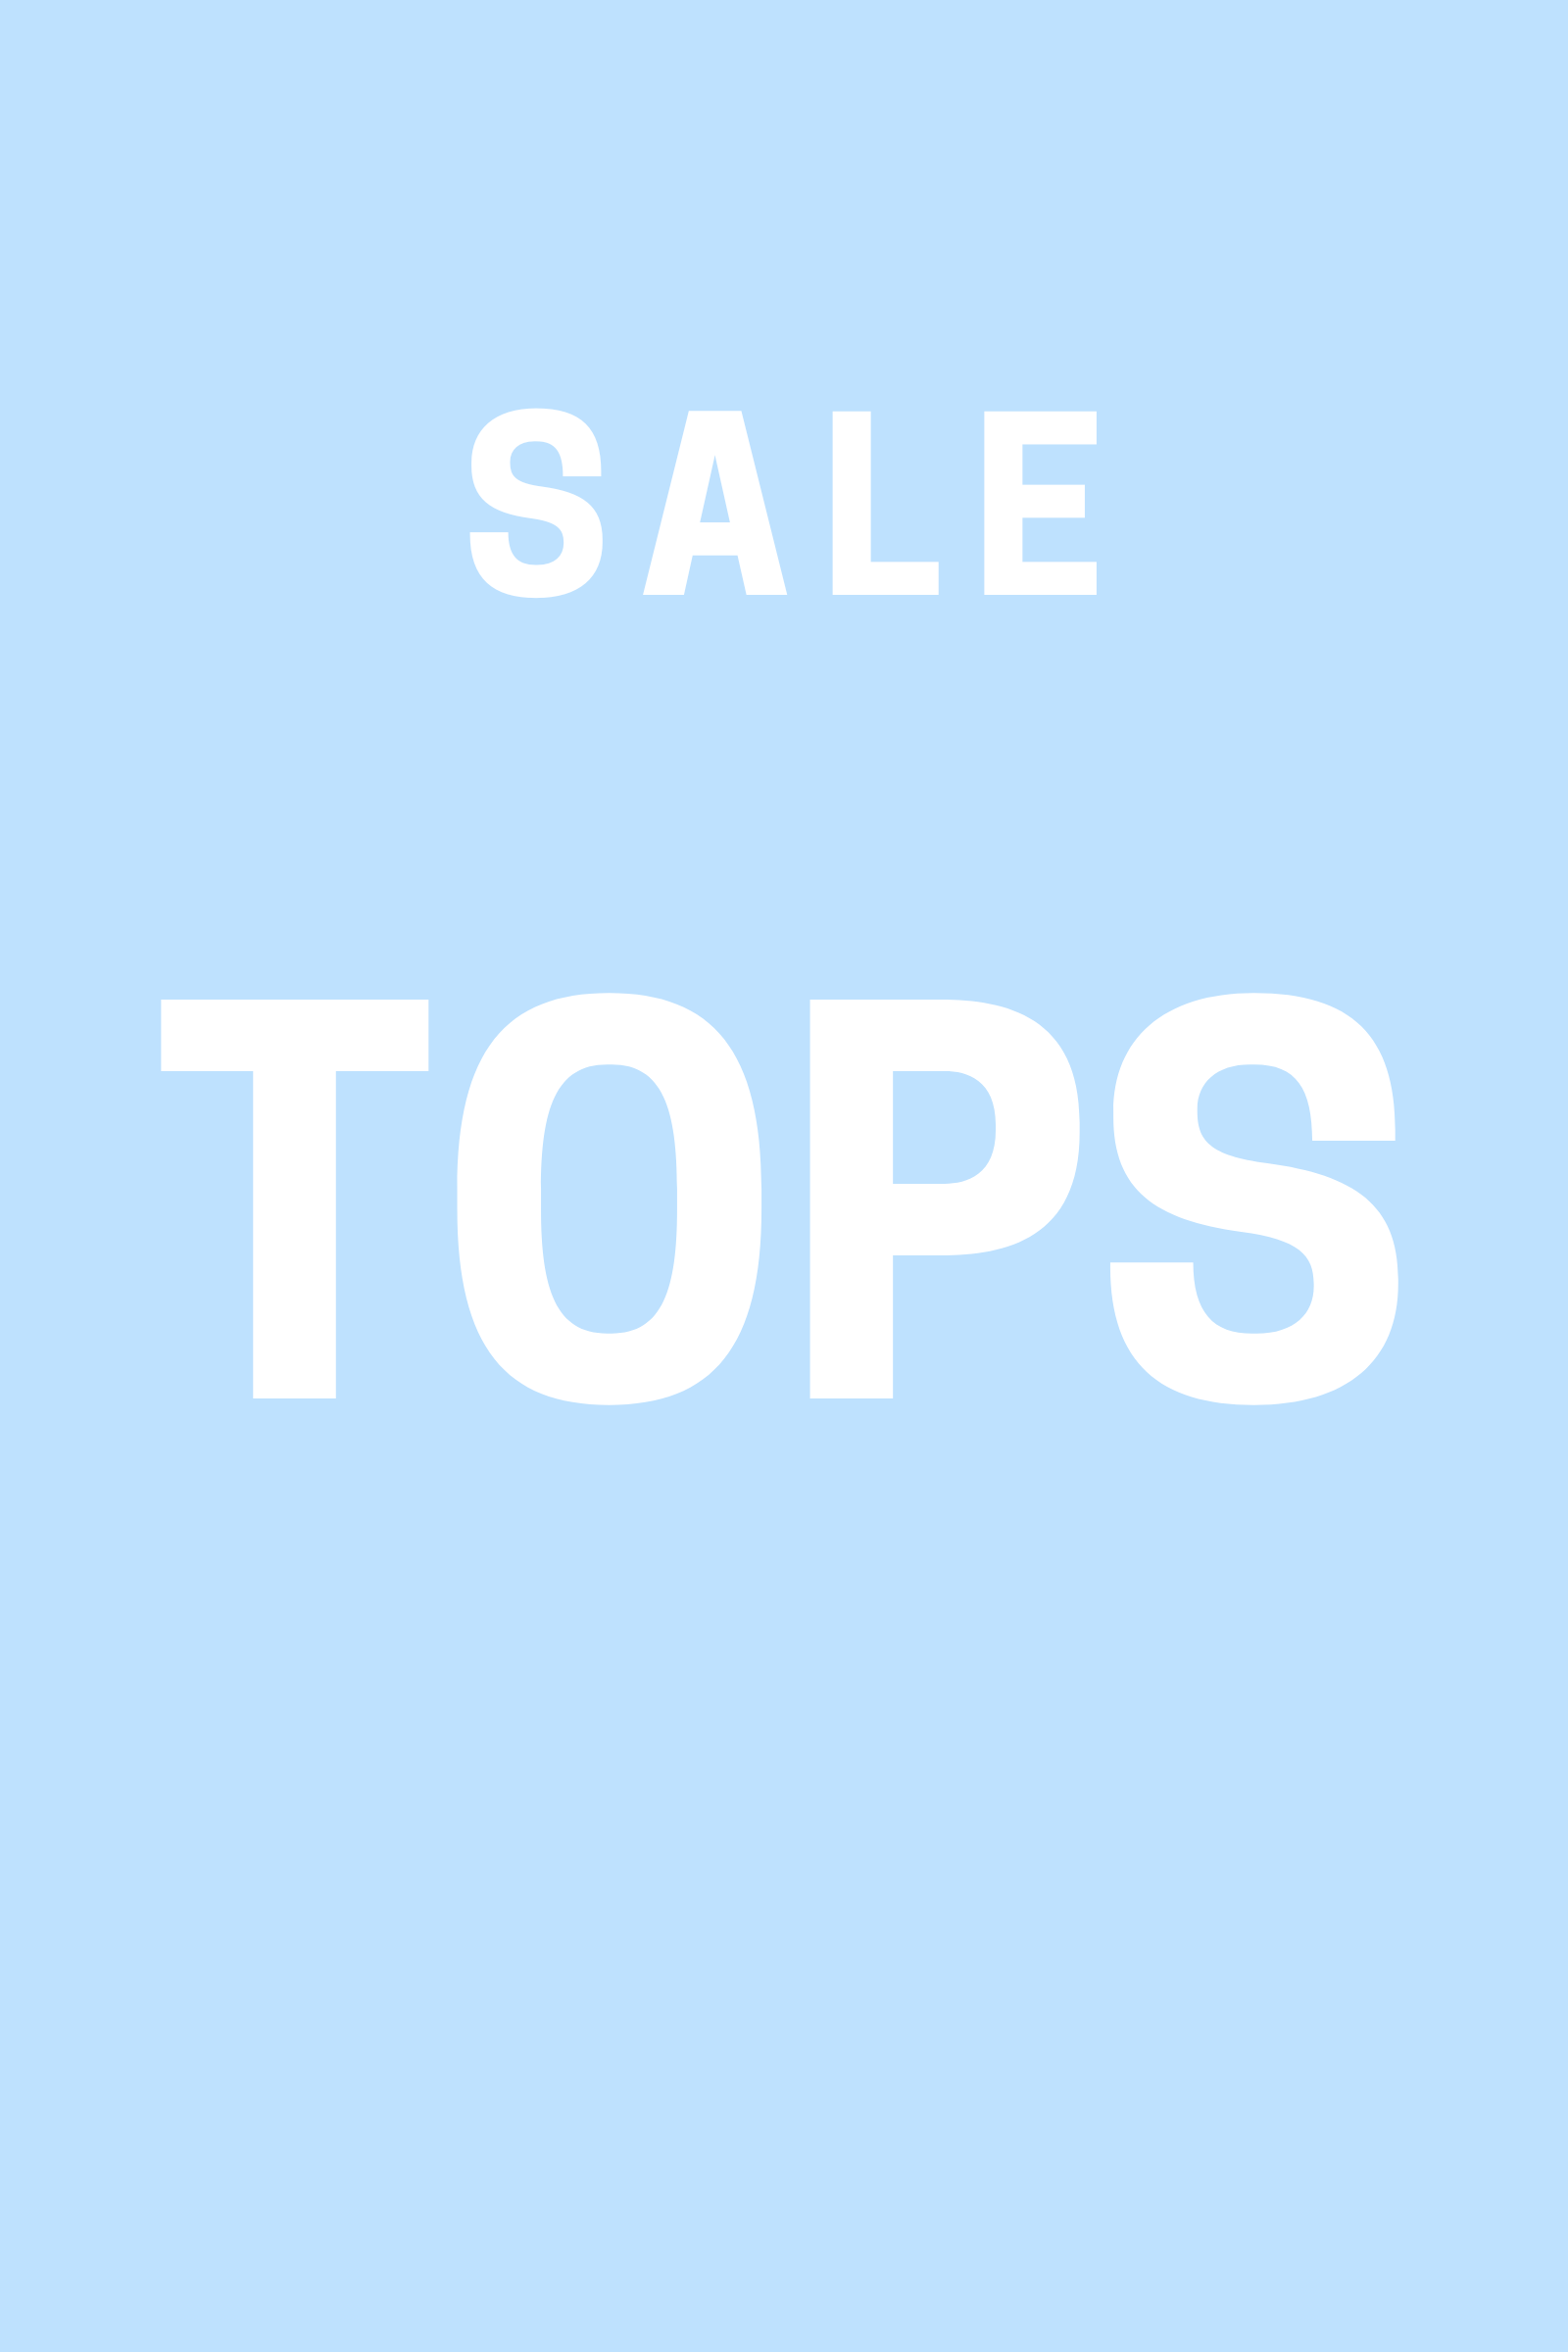 Sale Tops